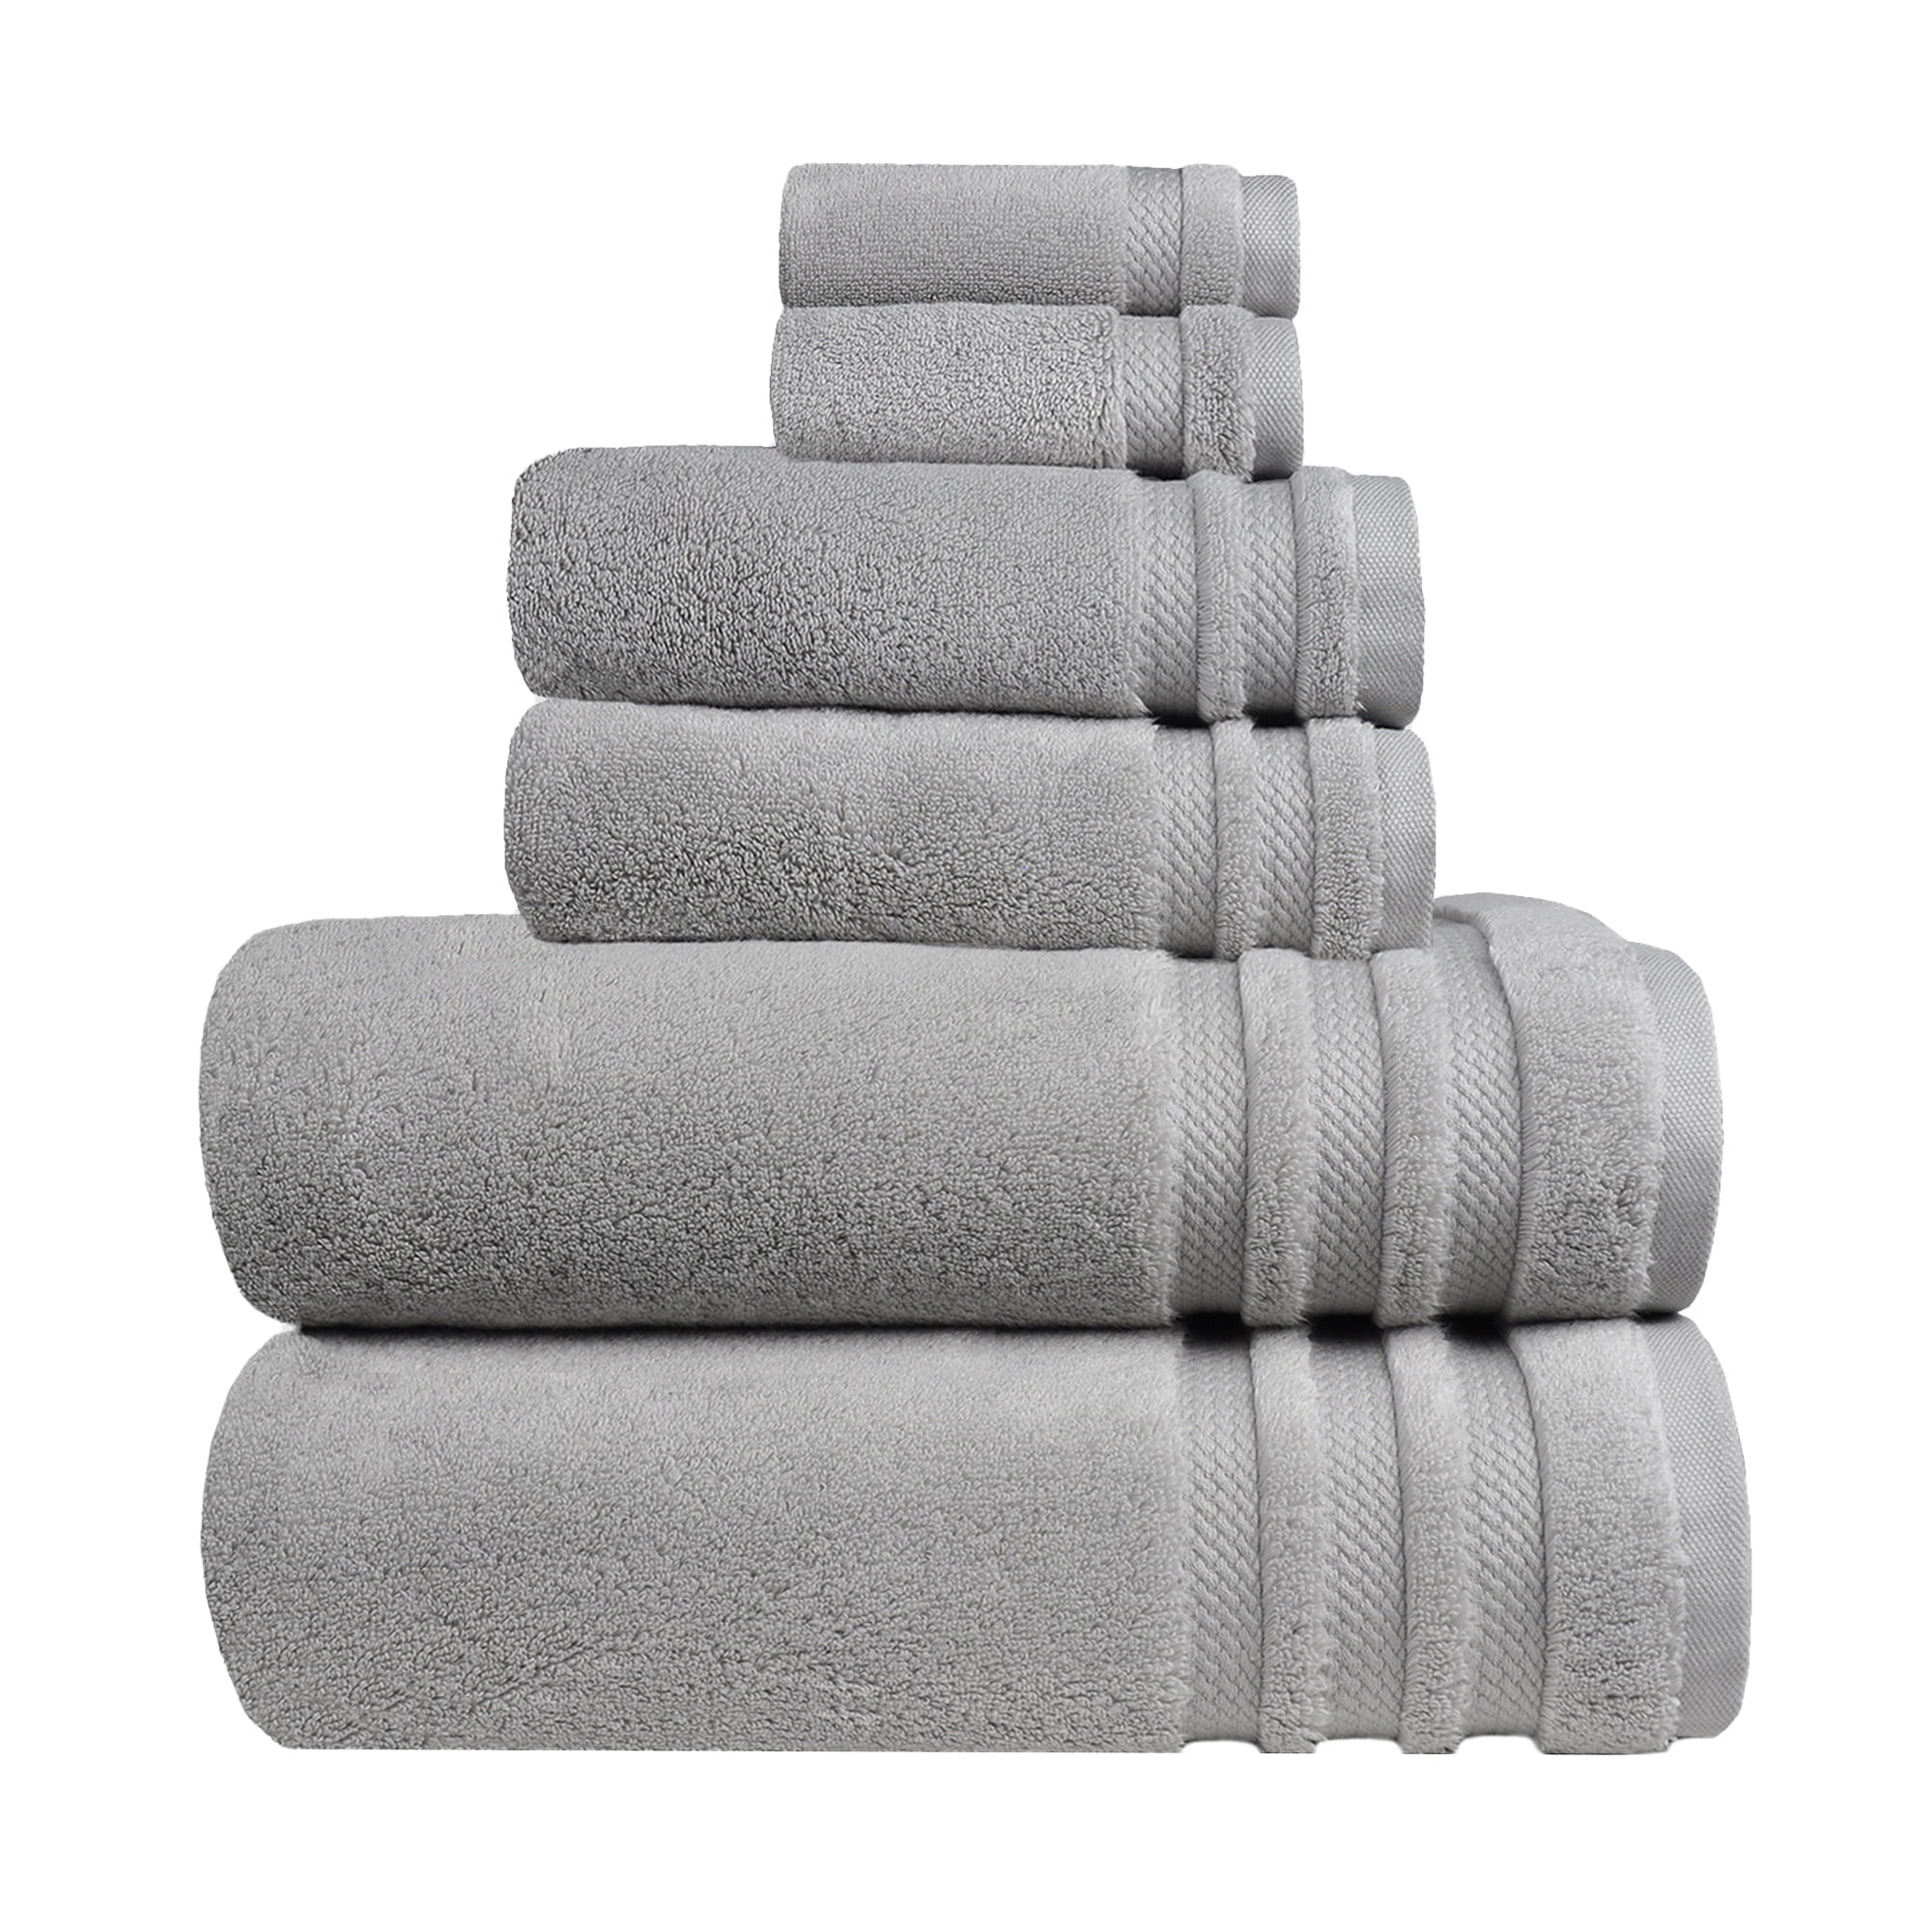 5 PCS TOWEL BALE SET 100% COTTON SOFT FACE HAND BATH BATHROOM TOWELS yangde4